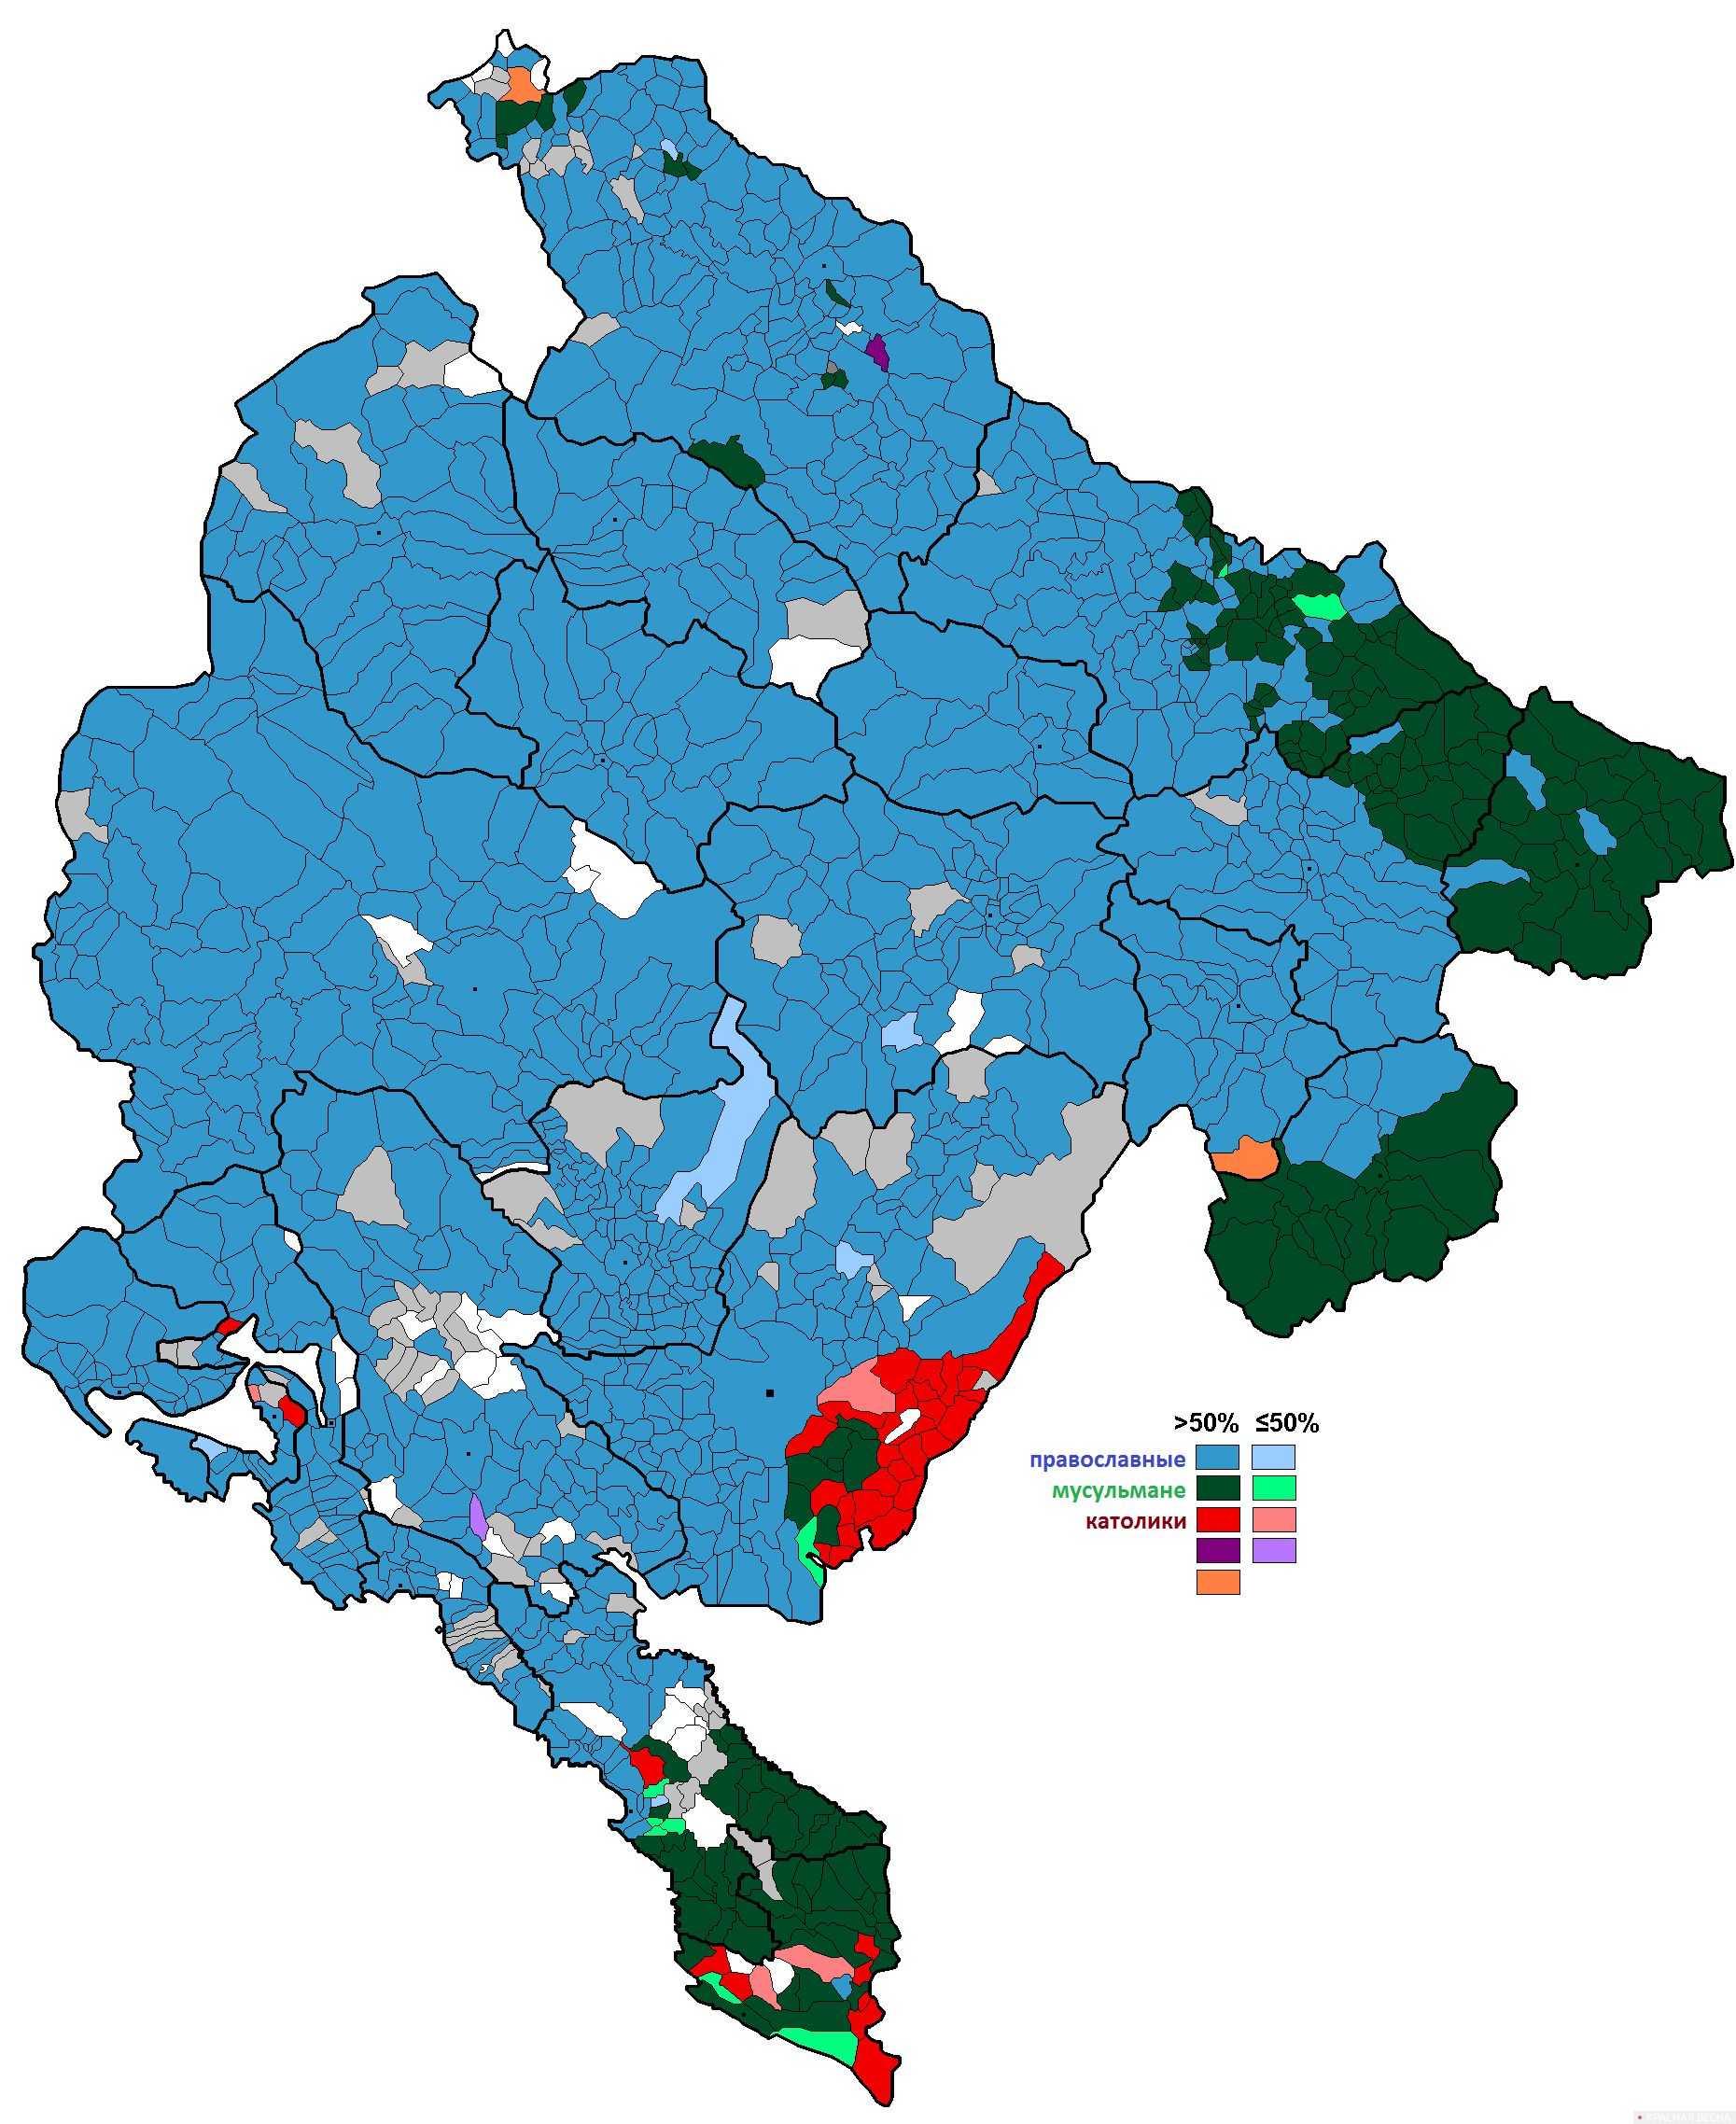 Черногория. Религиозный состав. 2011